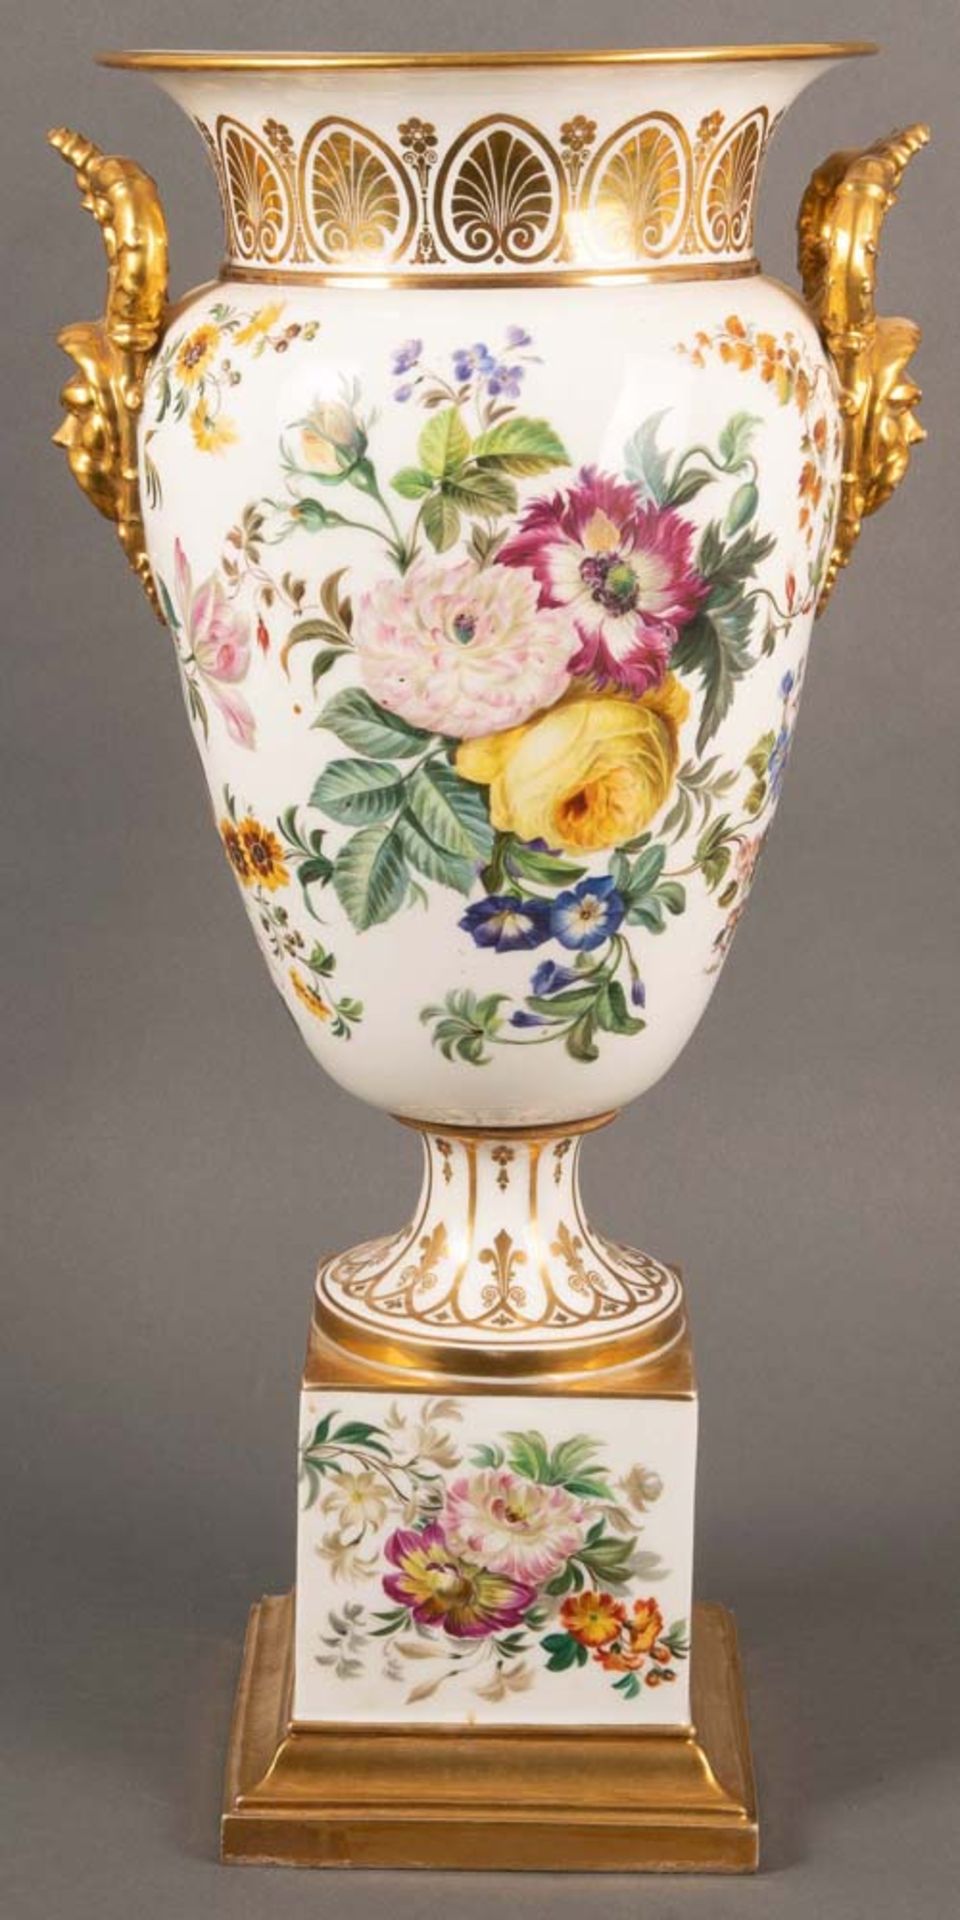 Prunkvase. Paris, Jacob Petit 19. Jh. Porzellan, bunt floral bemalt, mit Goldrand, H=58 cm. ** - Bild 2 aus 3